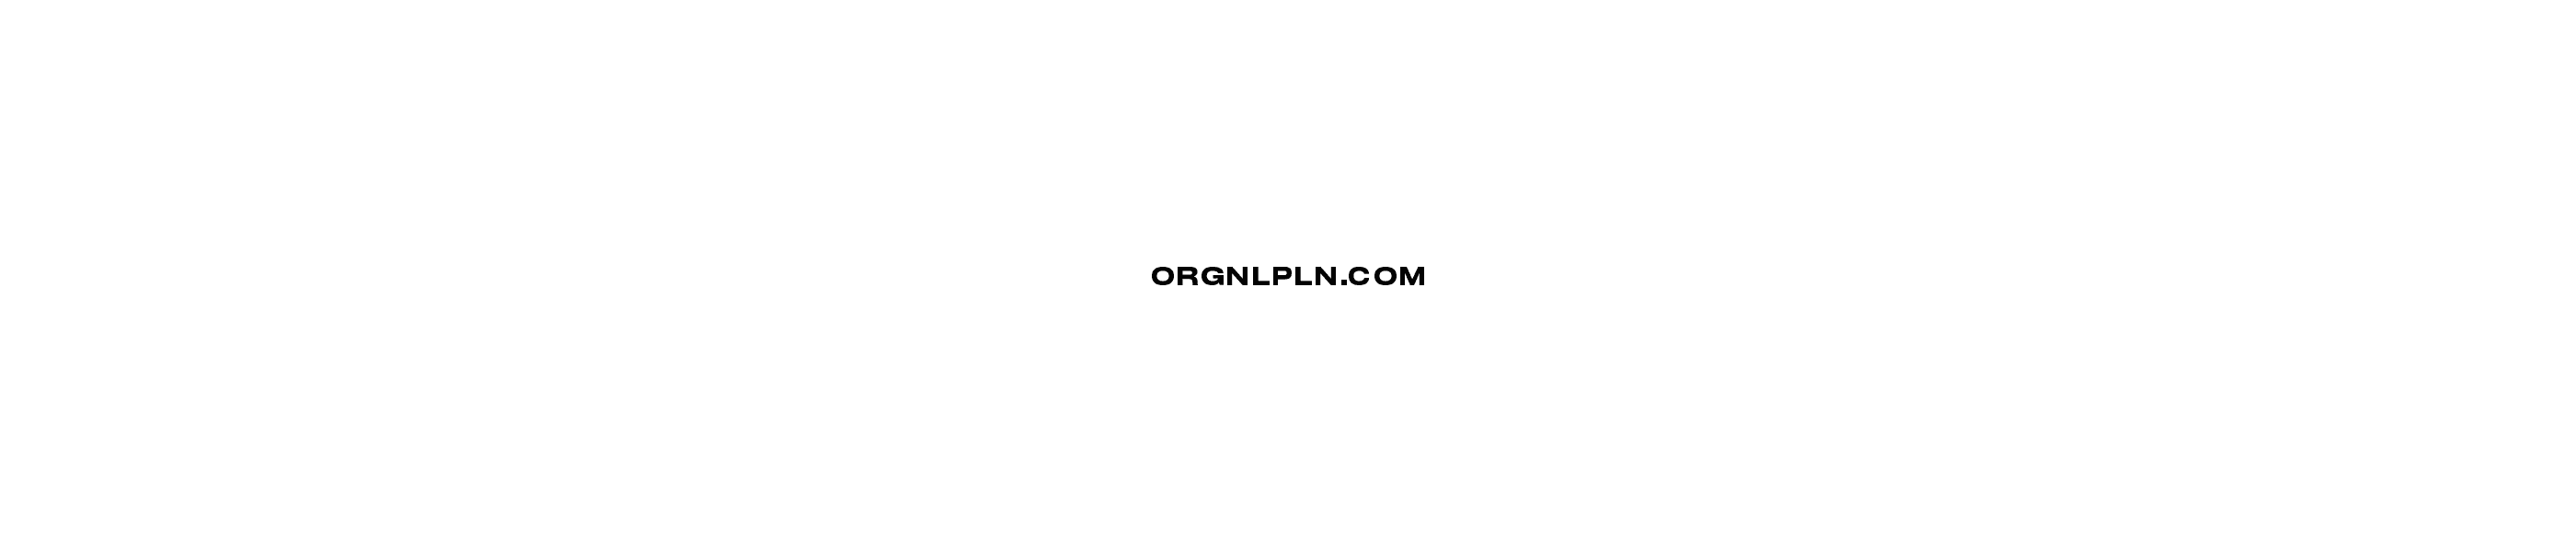 ORGNLPLN banner